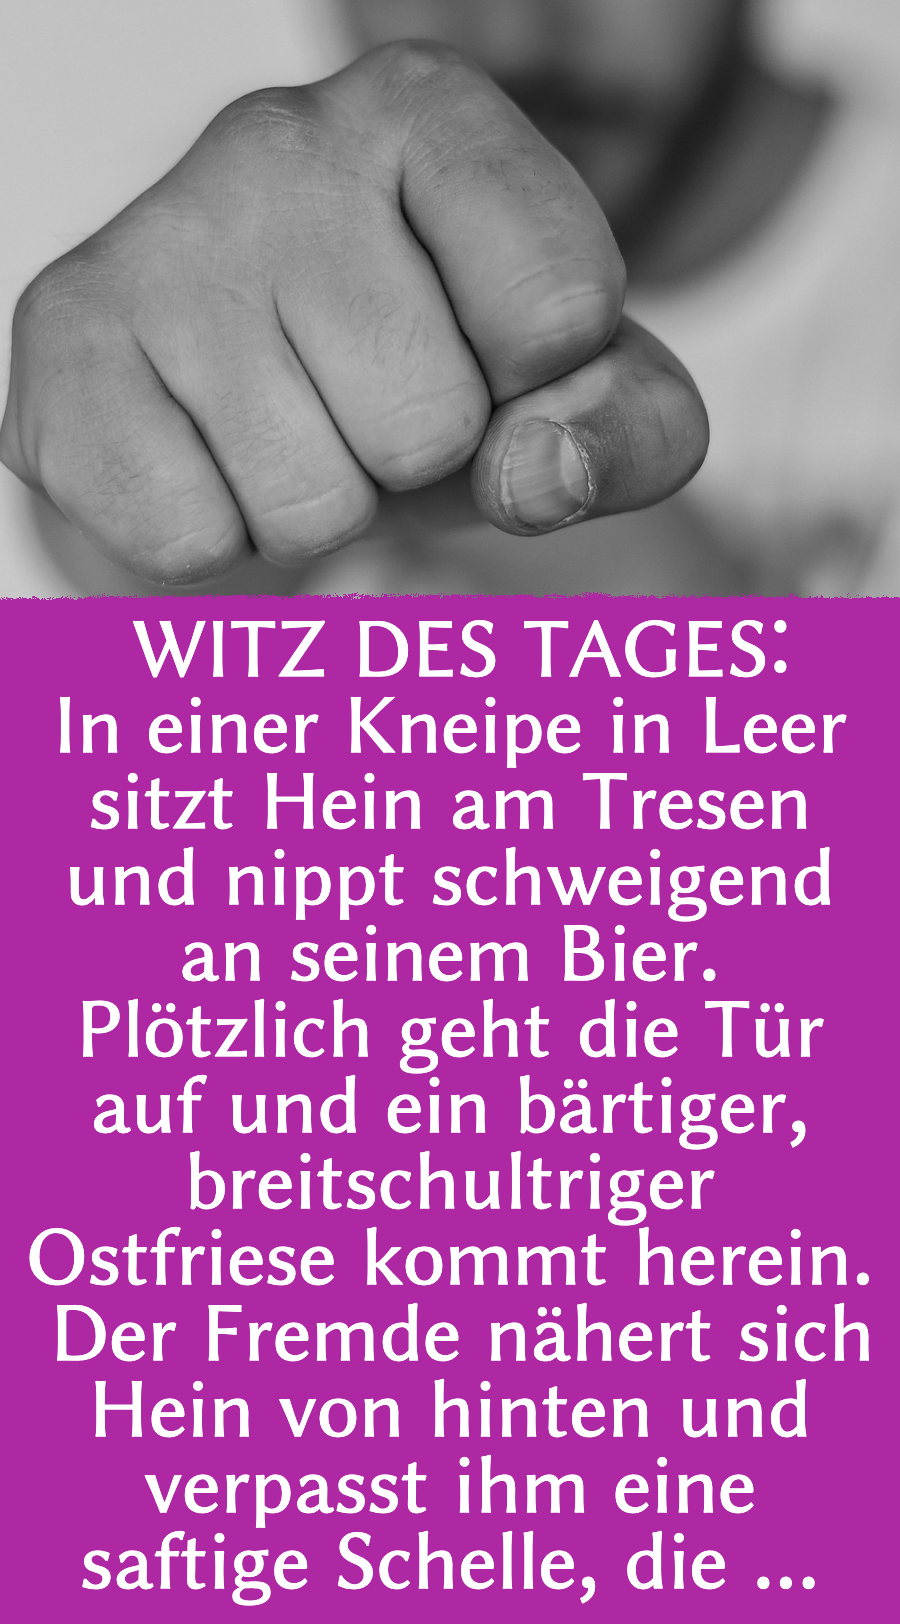 Ostfriesenwitz: Ostfriese verprügelt Gast in der Kneipe